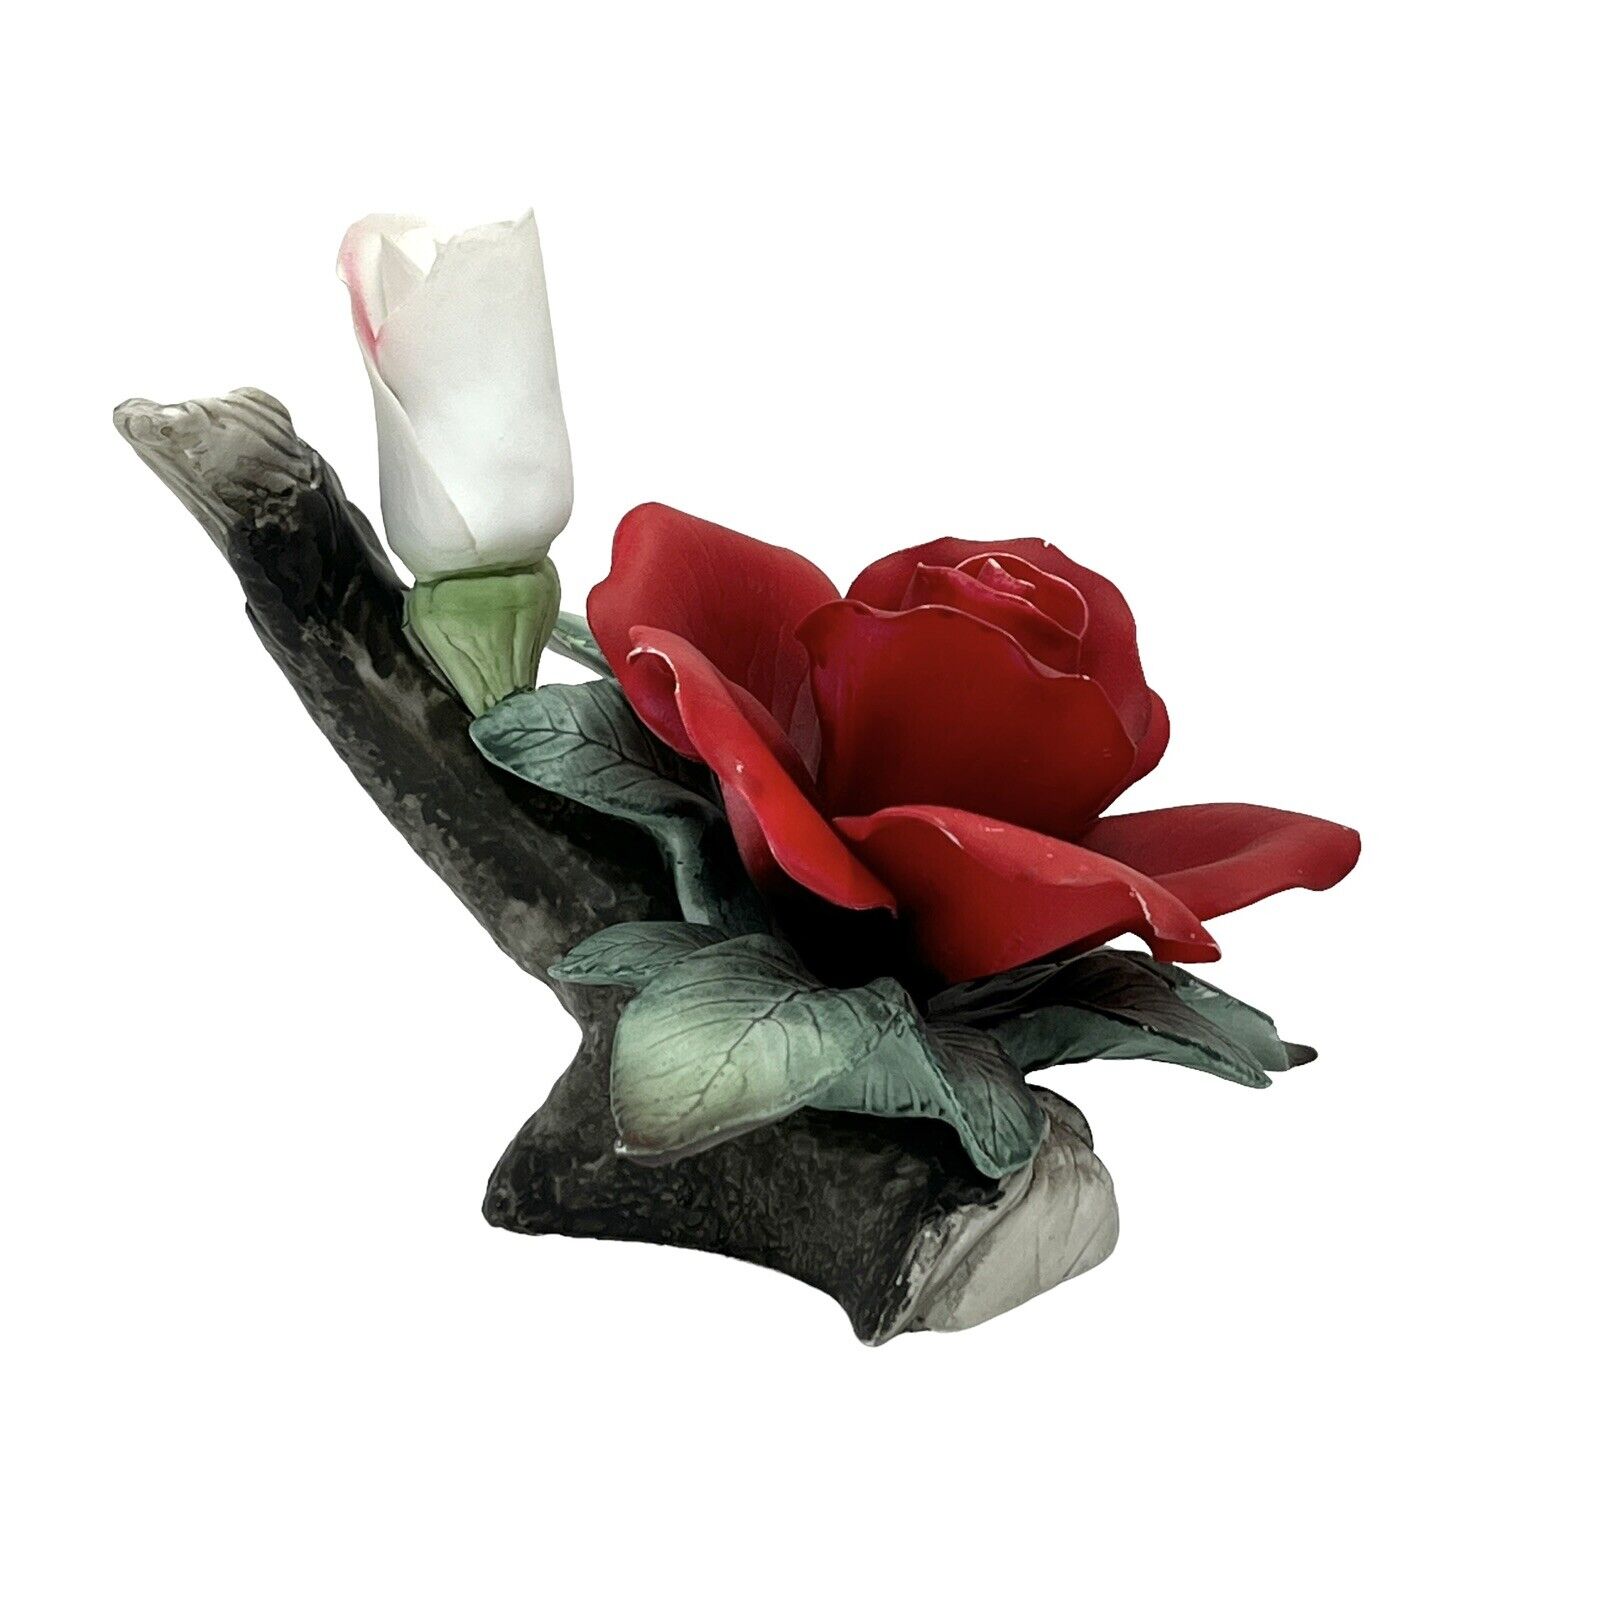 Vintage Lefton Porcelain Red Rose Figurine 5” x 5”